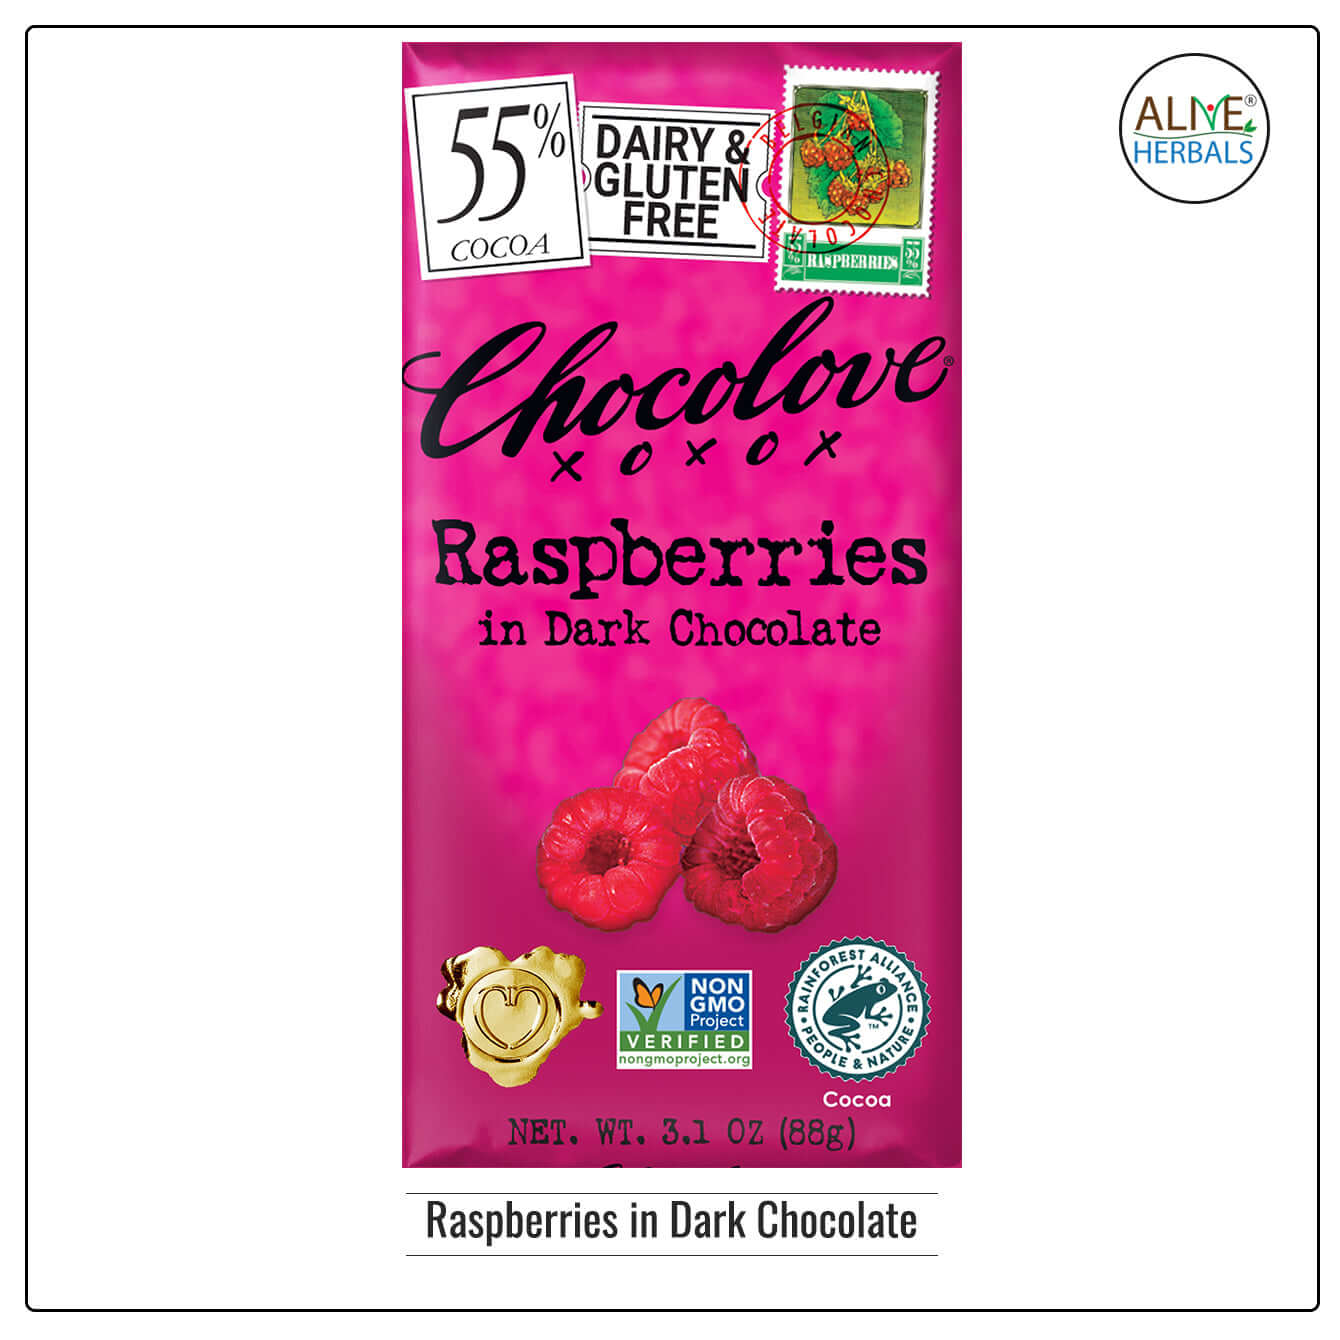 Raspberries in Dark Chocolate - Buy at Natural Food Store | Alive Herbals.